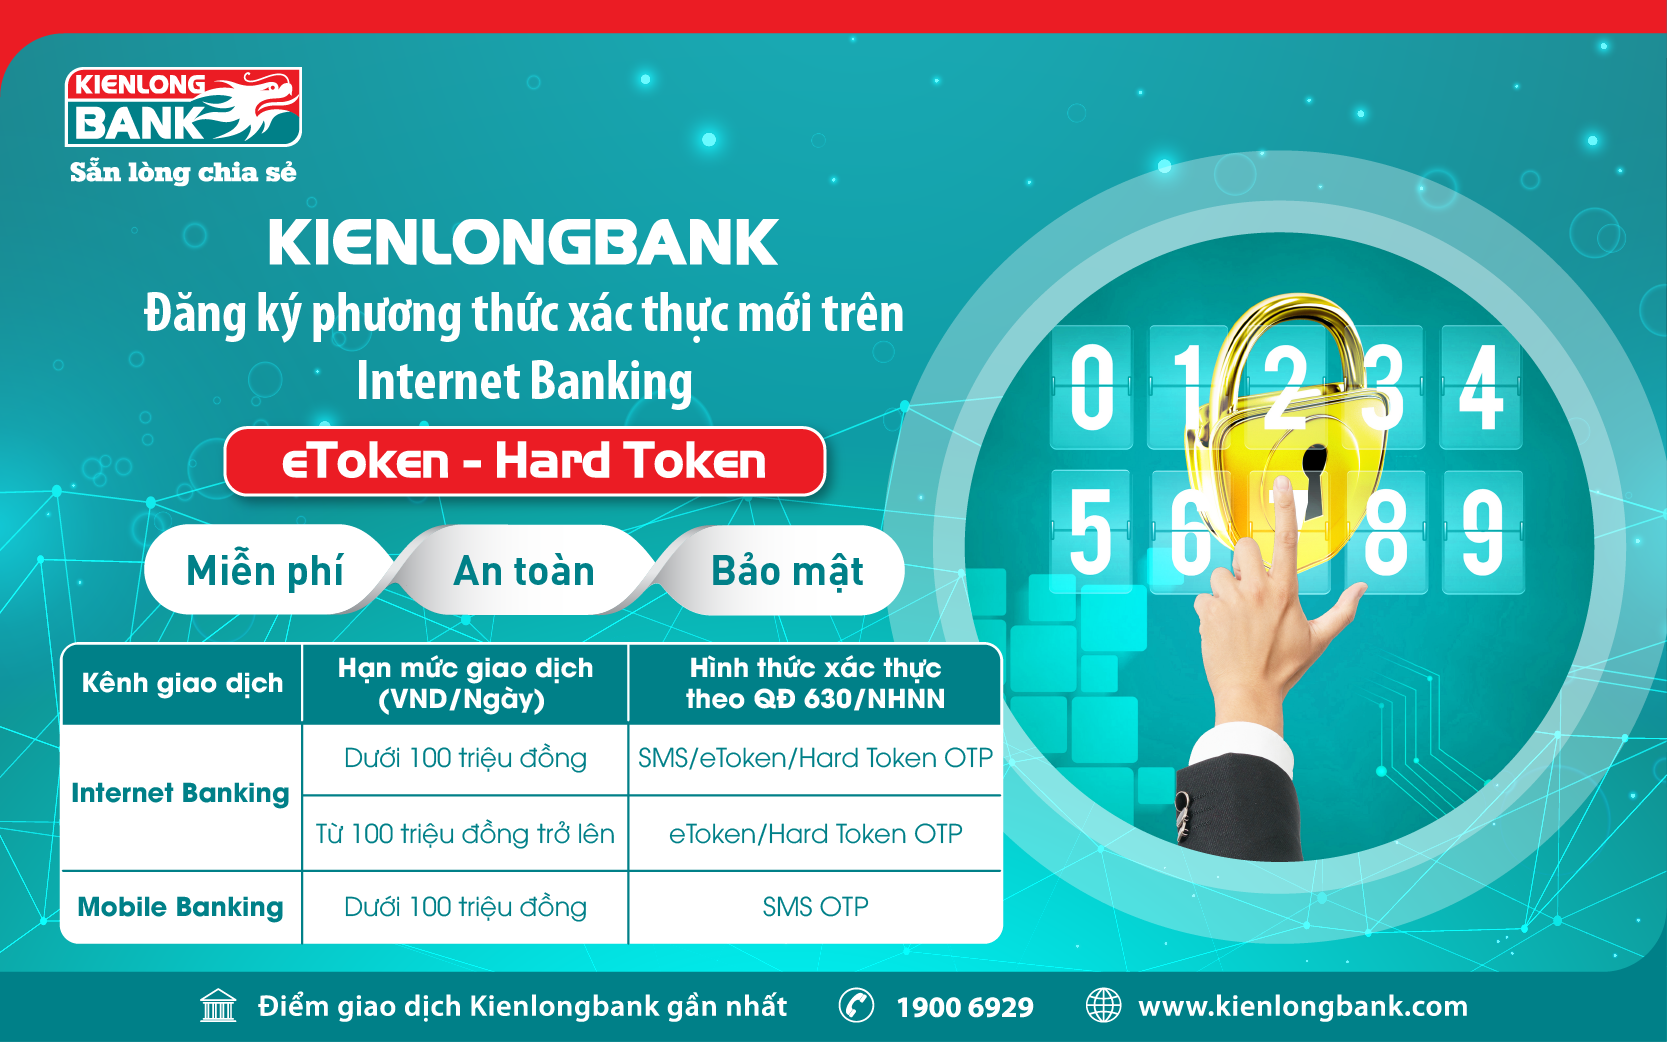 THÔNG BÁO: Kienlongbank áp dụng phương thức xác thực mới bảo mật trong thanh toán trực tuyến